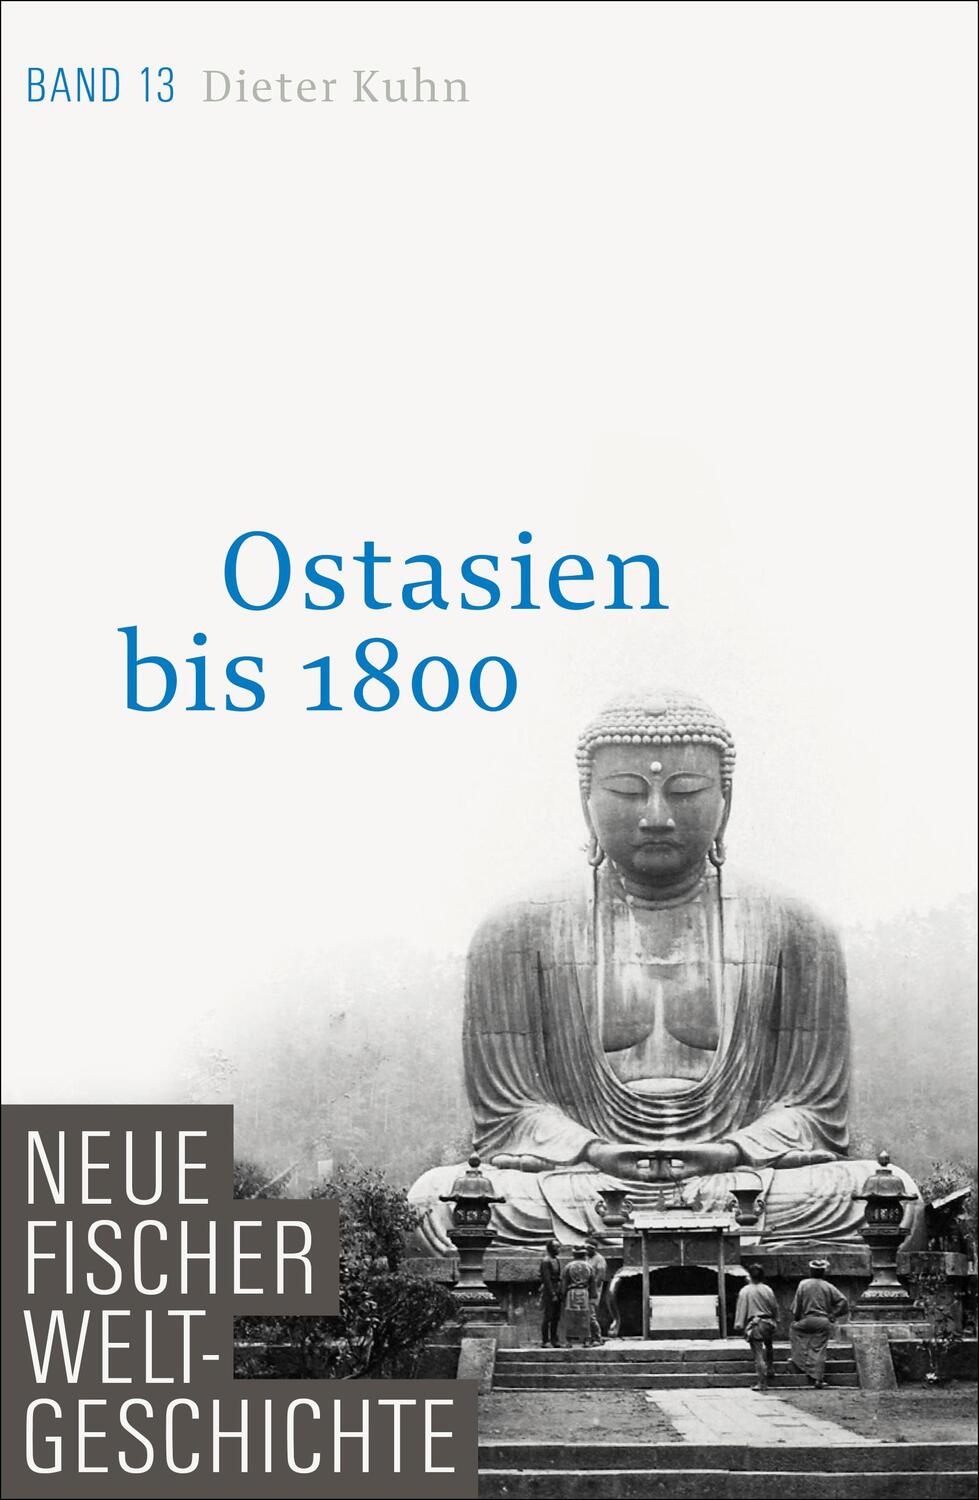 Neue Fischer Weltgeschichte. Band 13. Ostasien bis 1800 - Kuhn, Dieter